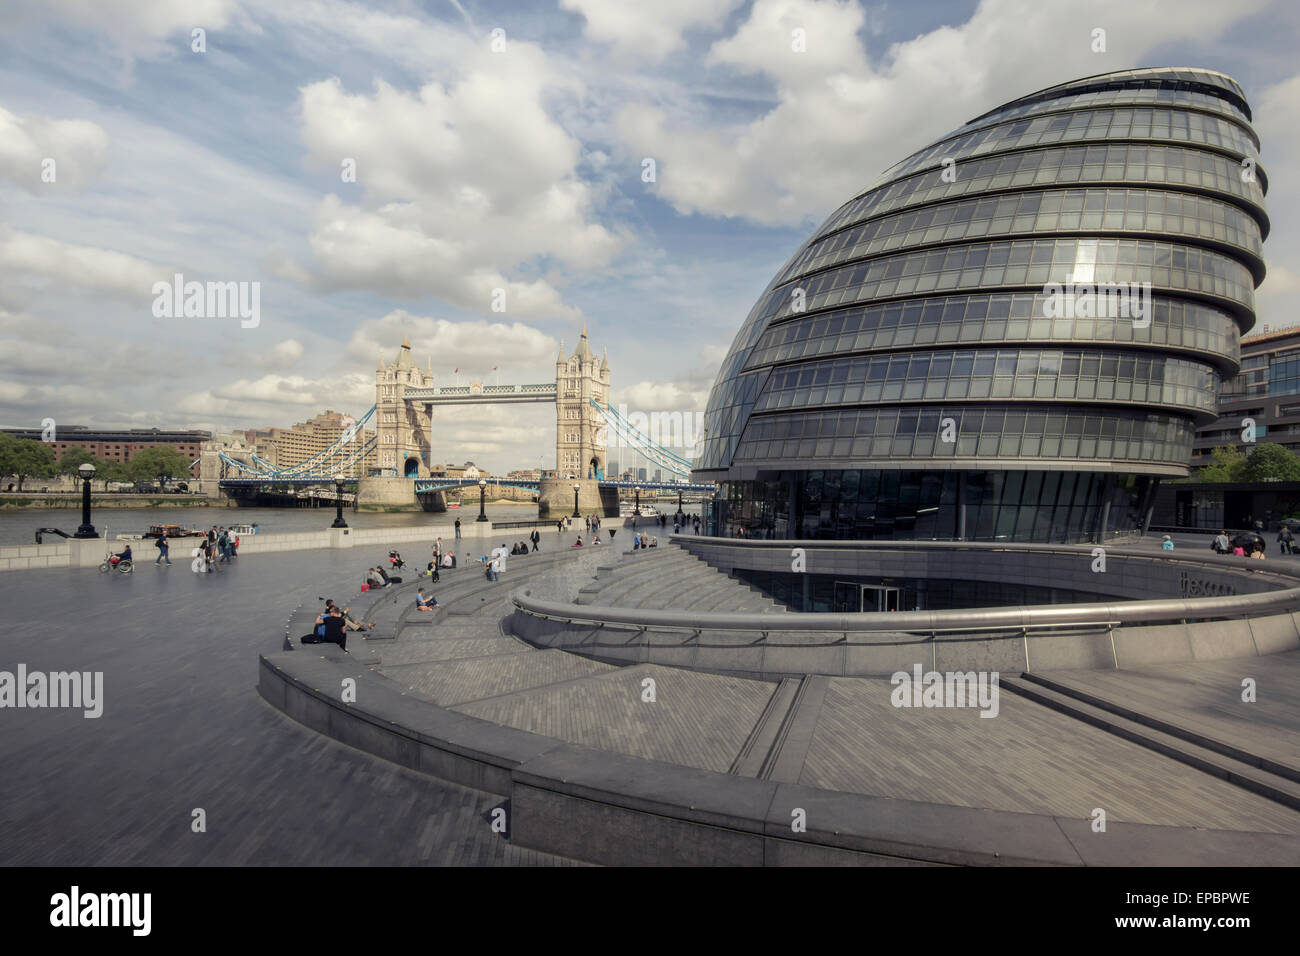 Londres, Angleterre - Mai 11,2015 : Voir l'Hôtel de Ville, le bâtiment a une forme bulbeuse, destiné à réduire sa surface Banque D'Images